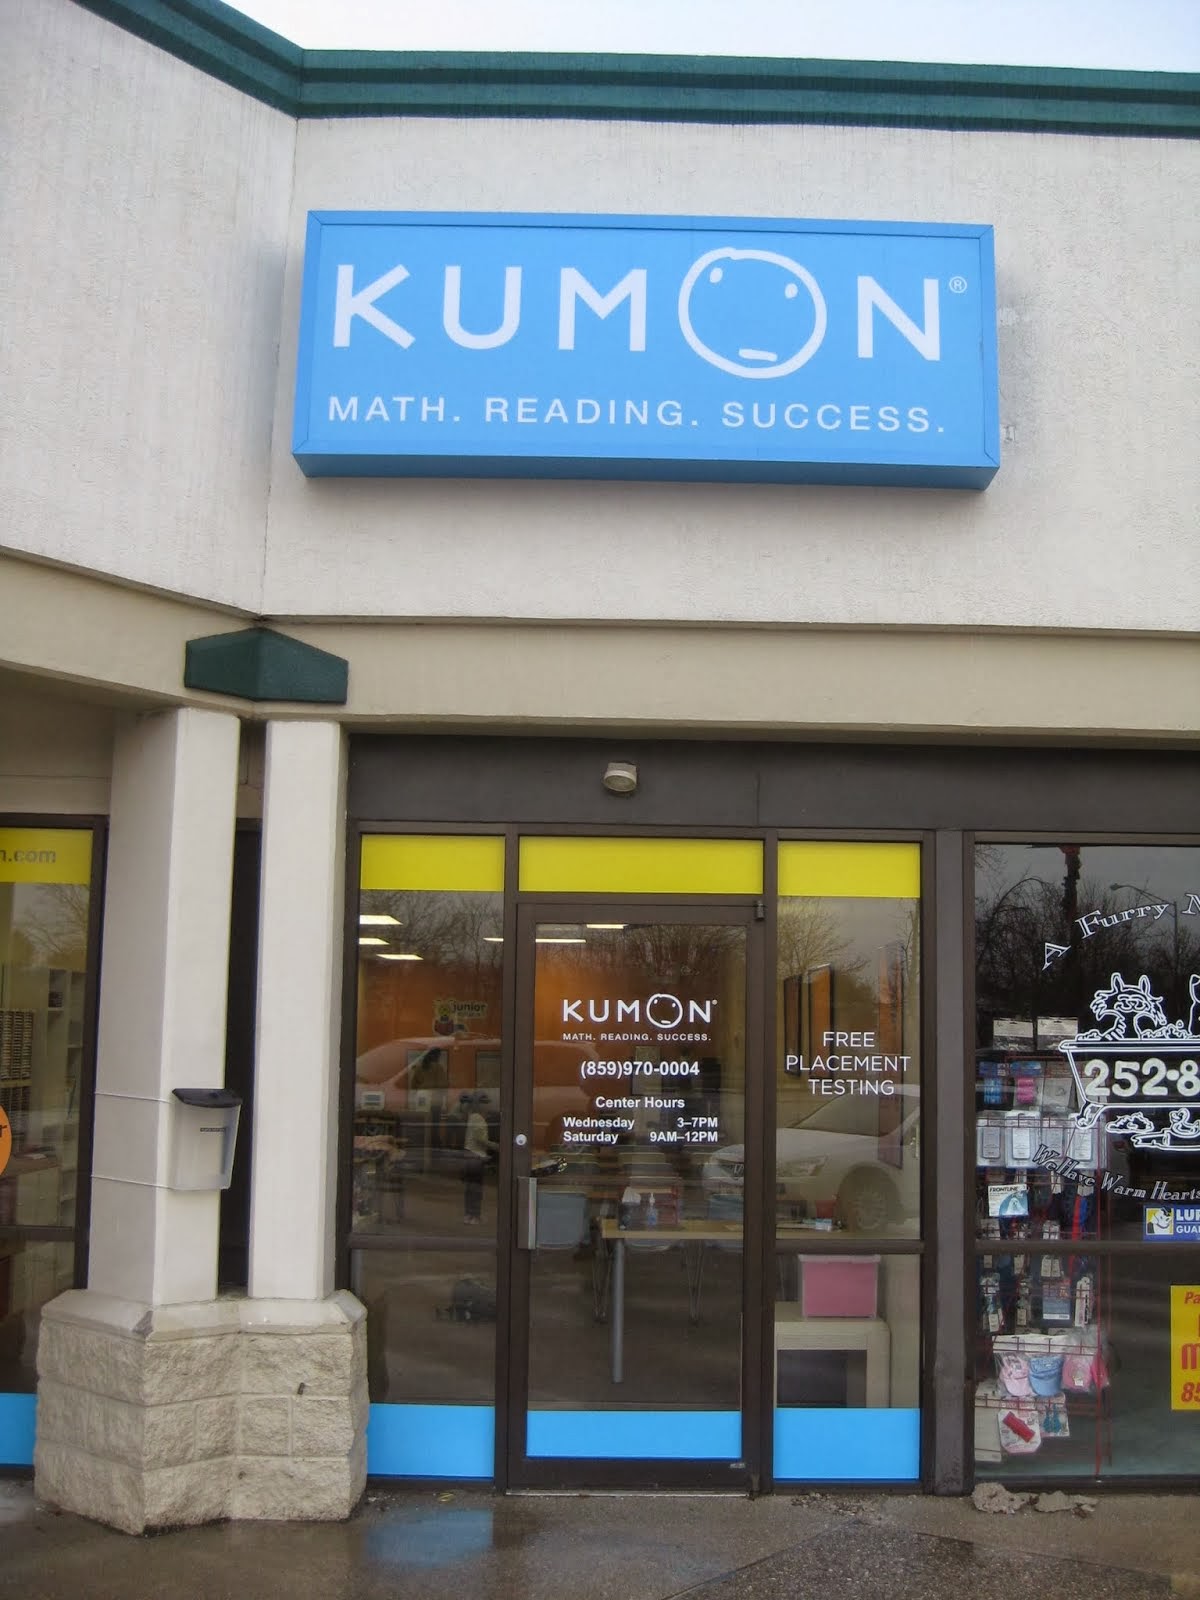 KUMON of Lexington | KUMON Math and Reading Center in SE Lexington